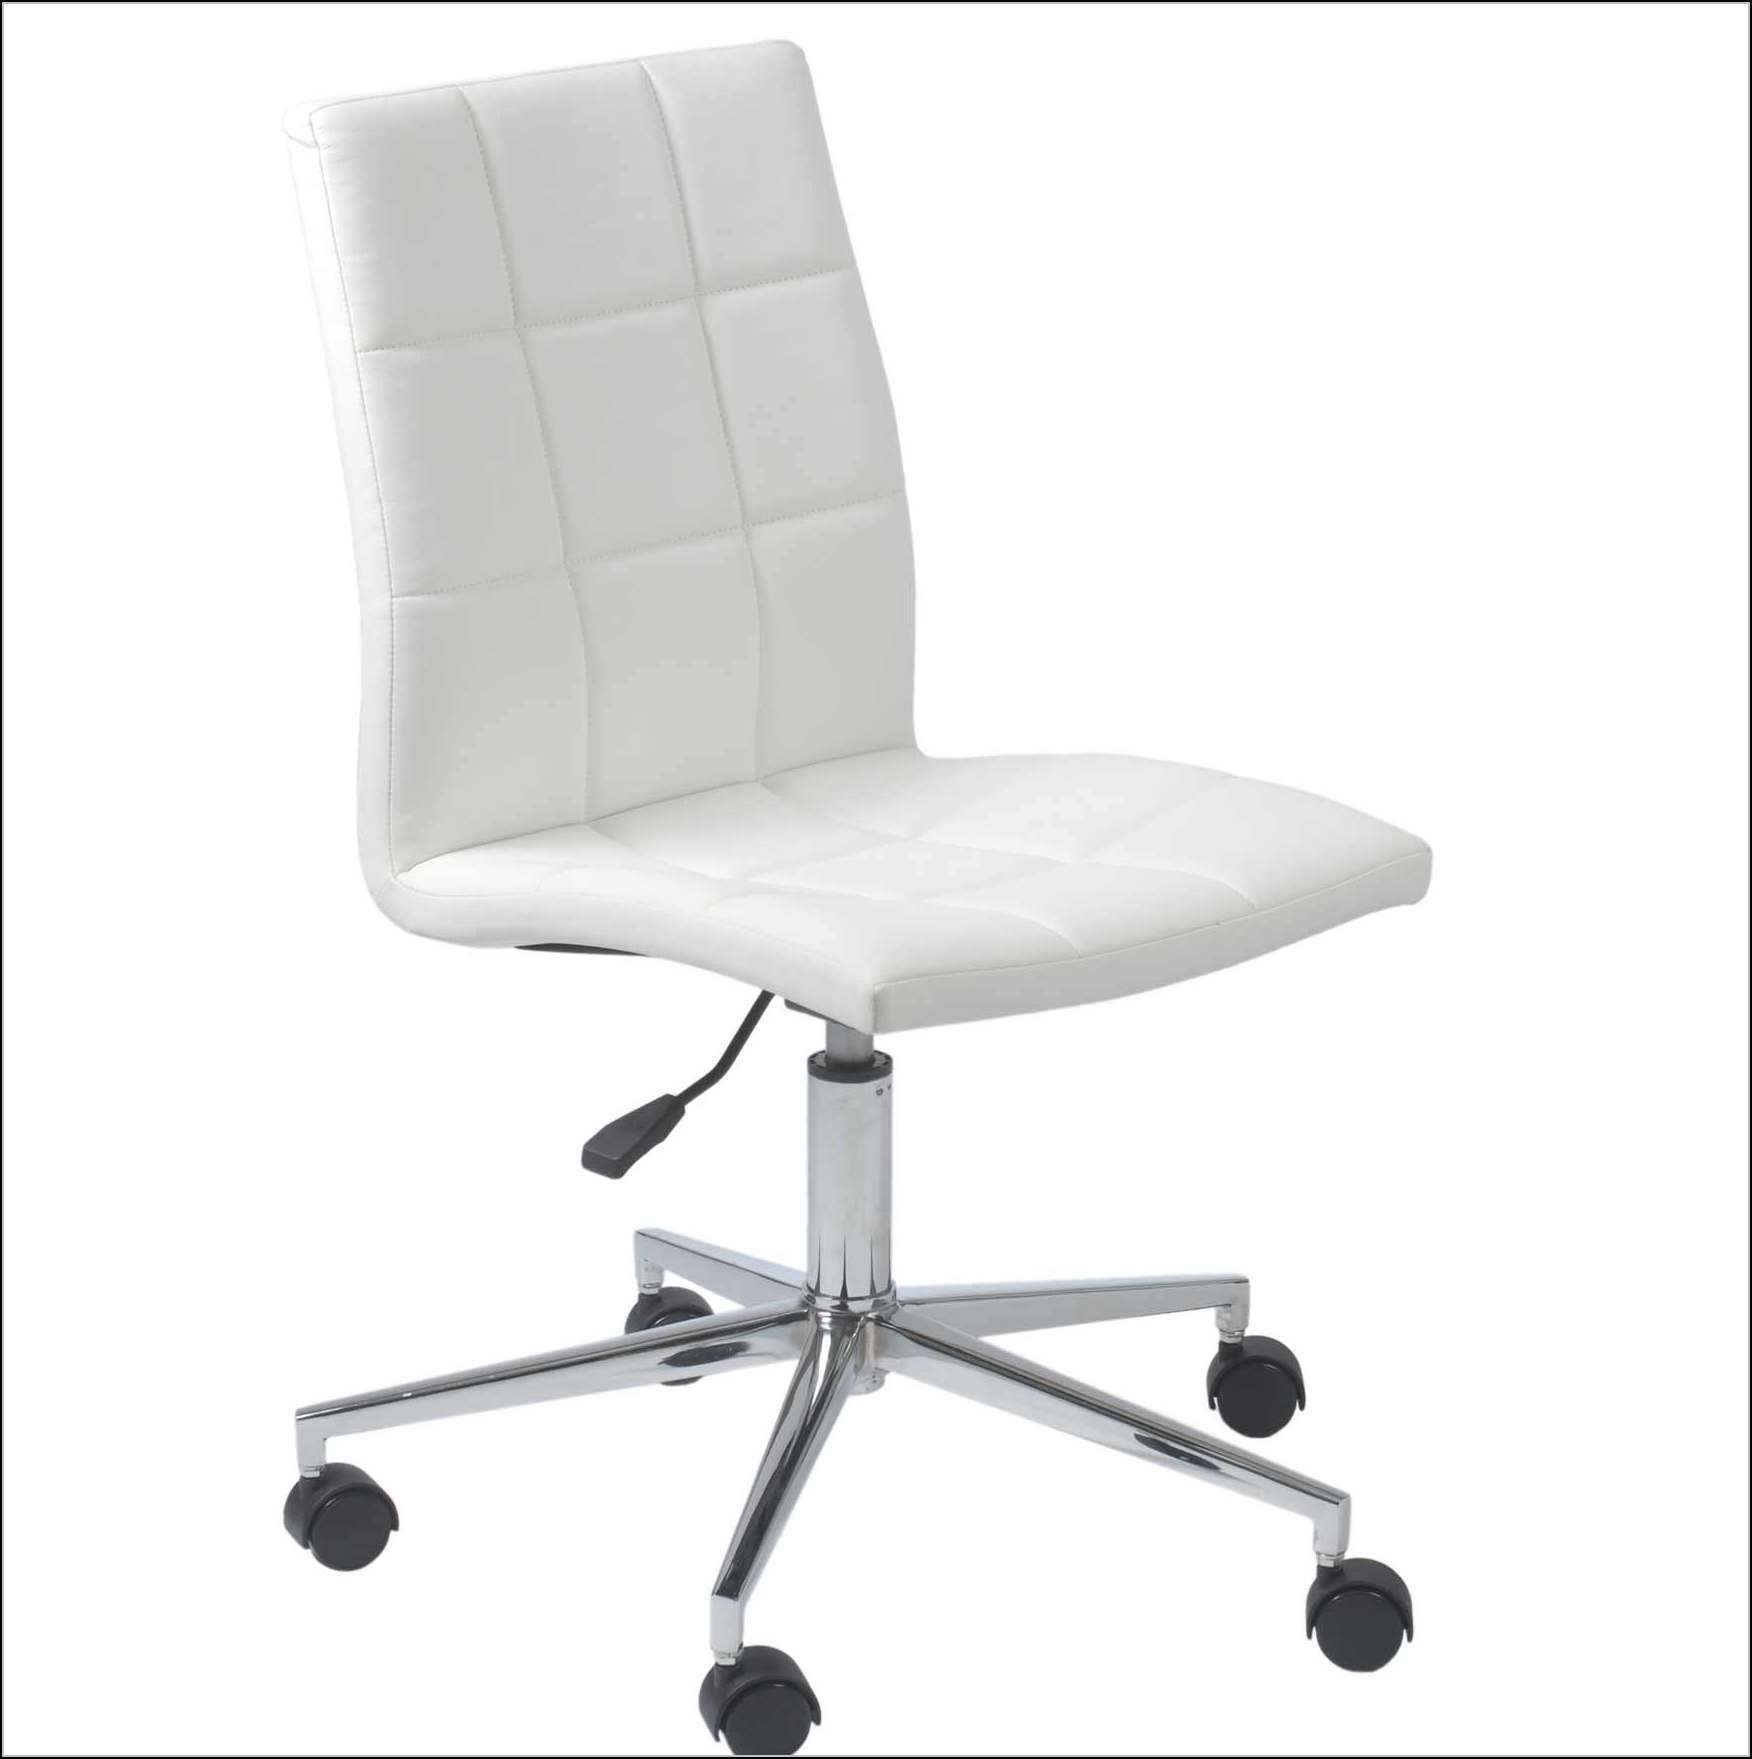 White Desk Chair No Wheels - Chairs : Home Design Ideas #AB1PmoXD6l453